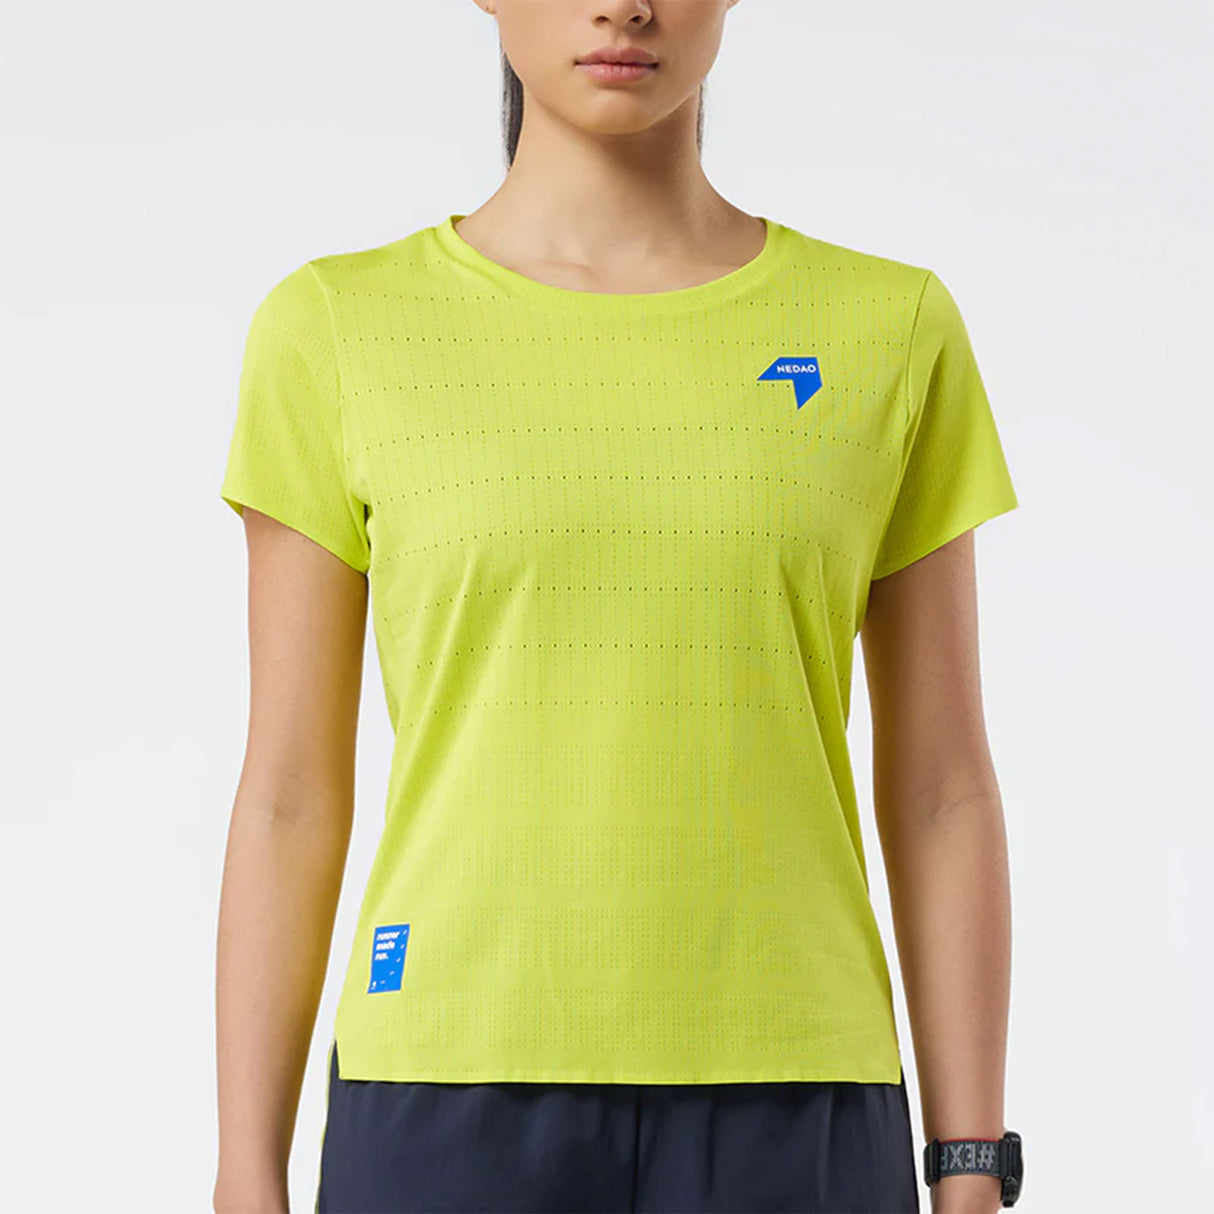 Nedao Women's QiFlow Running T-Shirt V3.0